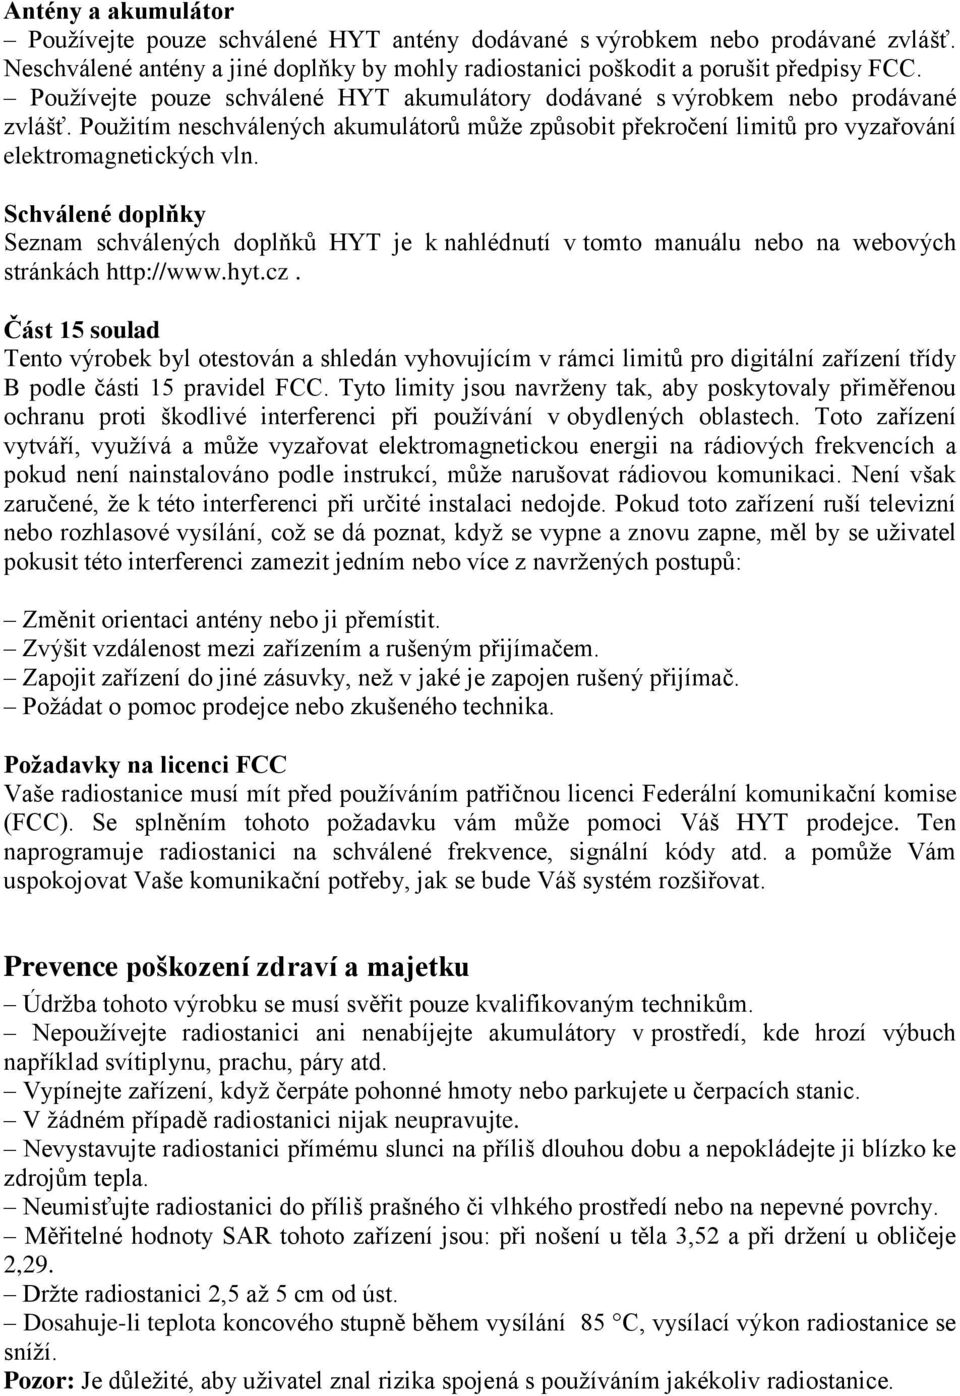 Schválené doplňky Seznam schválených doplňků HYT je k nahlédnutí v tomto manuálu nebo na webových stránkách http://www.hyt.cz.